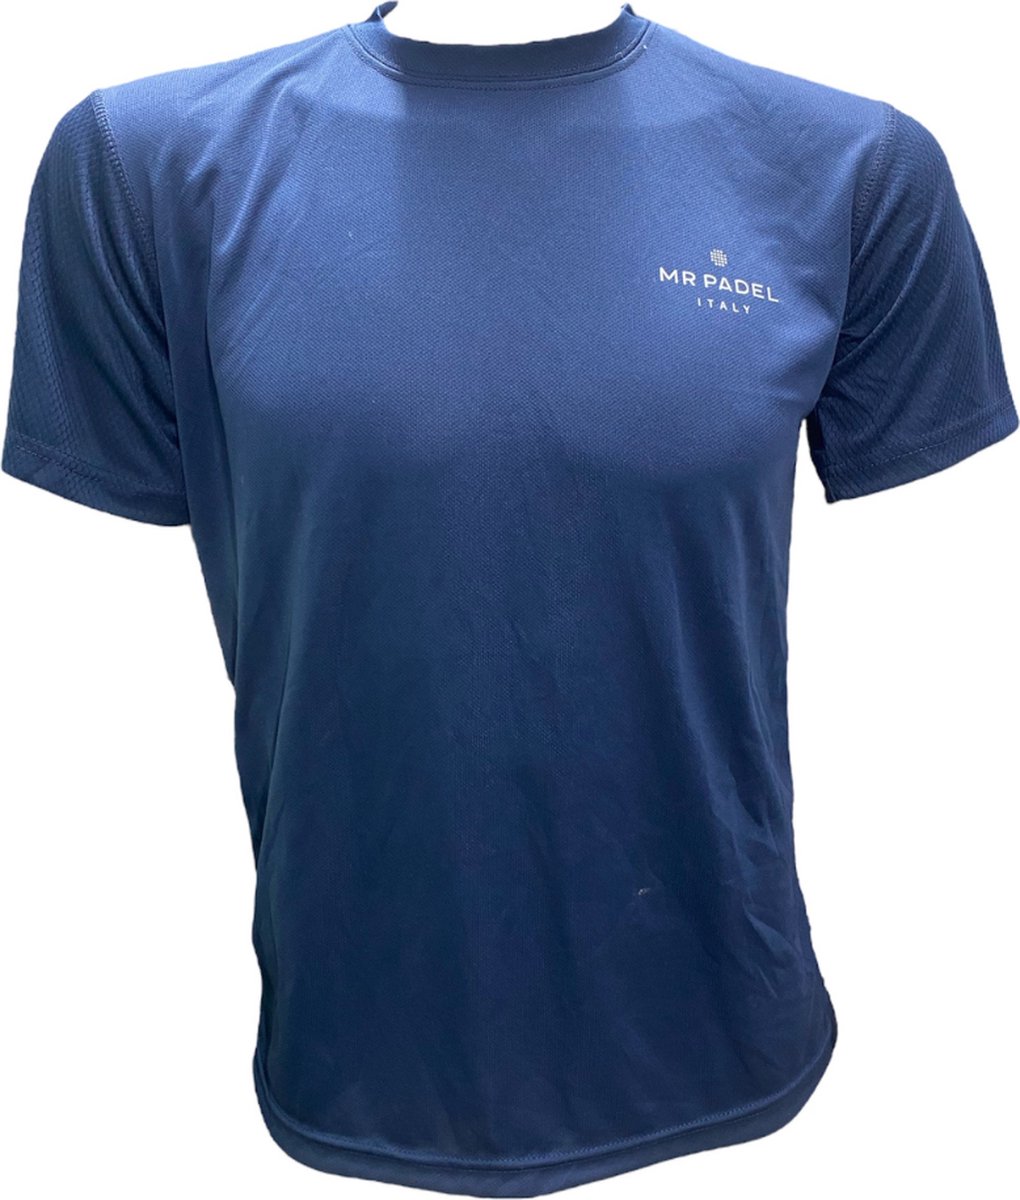 Mr Padel -Dark Blue Maat L - Men's Slim Fit Padel Shirt